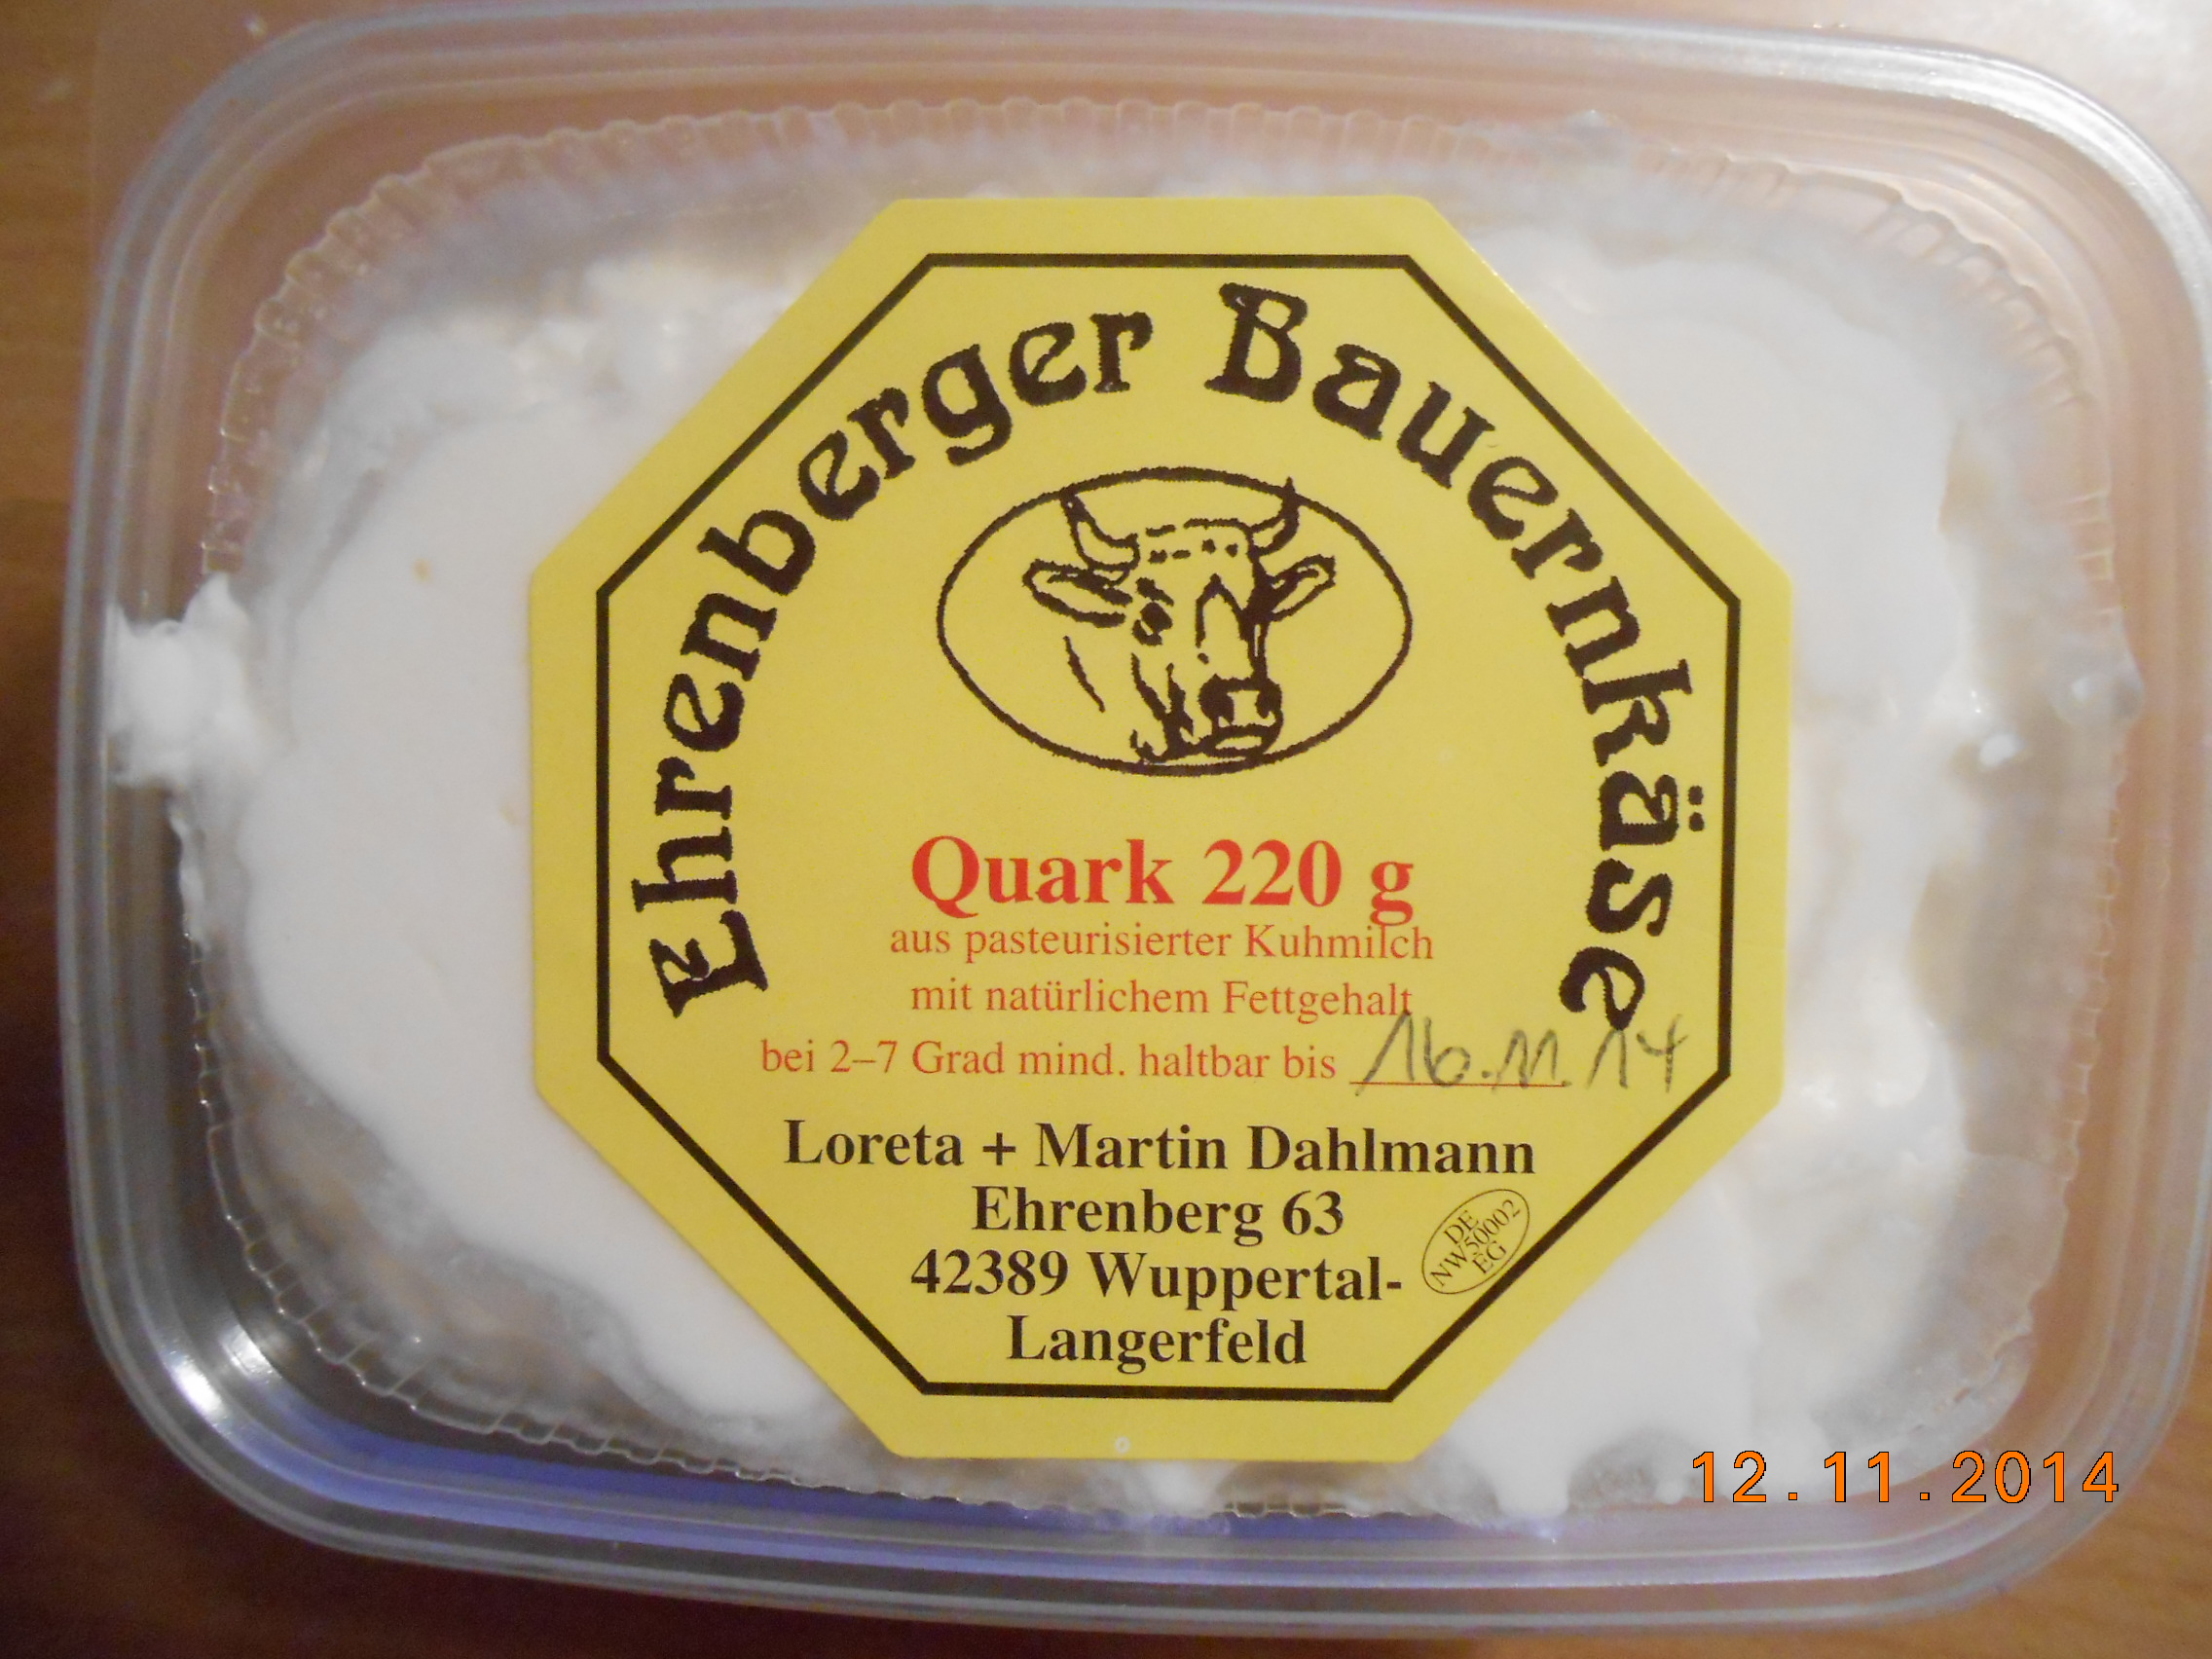 Nicht nur leckeren Käse - auch Quark bekommt man dort